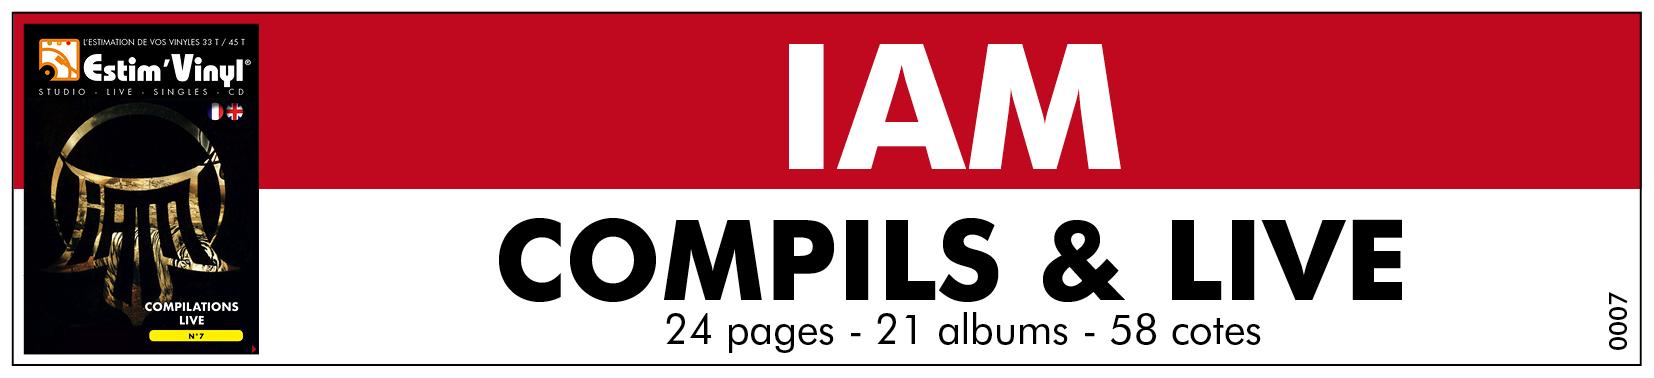 RetrouRetrouvez la discographie cotée de IAM, discographie cotée vinyles compilations de IAM, compilations et cd de IAM, IAM, valeurs des vinyles compilations et live de IAM, cote vinyles compilations et live IAM, Ombre est lumière (Vol.1 & 2), Ombre est lumière (Vol.unique), Cut Killer & IAM – Mixtape 19361 Part 1, Cut Killer & IAM – Mixtape 19361 Part 2, ...De la Planète Mars / Ombre Est Lumière, ...IAM, ...IAM “SFR“, Anthologie 1991-2004, IAM Platinum,  IAM - L’intégral, Galaxie, Art Martiens / ...IAM, www.estimvinyl.com.vez toute la discographie cotée des albums vinyles live, compilations 33 tours et CD du groupe marseillais IAM, album par album. Notre site créé depuis 2011 est dédié à la valeur de vos vinyles  Retrouvez toute la discographie cotée des albums vinyles live, compilations 33 tours et CD du groupe marseillais IAM, album par album, composé d’Akhenaton (Philippe Fragione), Shurik’n (Geoffroy Mussard), Kheops (Éric Mazel), Imhotep (Pascal Perez), Kephren (François Mendy) et Freeman (Malek Brahimi) , IAM,Ombre est lumière (Vol.1 & 2), Ombre est lumière (Vol.unique), Cut Killer & IAM – Mixtape 19361 Part 1, Cut Killer & IAM – Mixtape 19361 Part 2, ...De la Planète Mars / Ombre Est Lumière, ...IAM , ...IAM “SFR, Anthologie 1991-2004, IAM Platinum, IAM - L’intégral, Galaxie, Art Martiens / ...IAM, discographie Live IAM, valeurs vinyles live IAM, Retour aux pyramides, Live Au Dôme De Marseille, www.estimvinyl.com